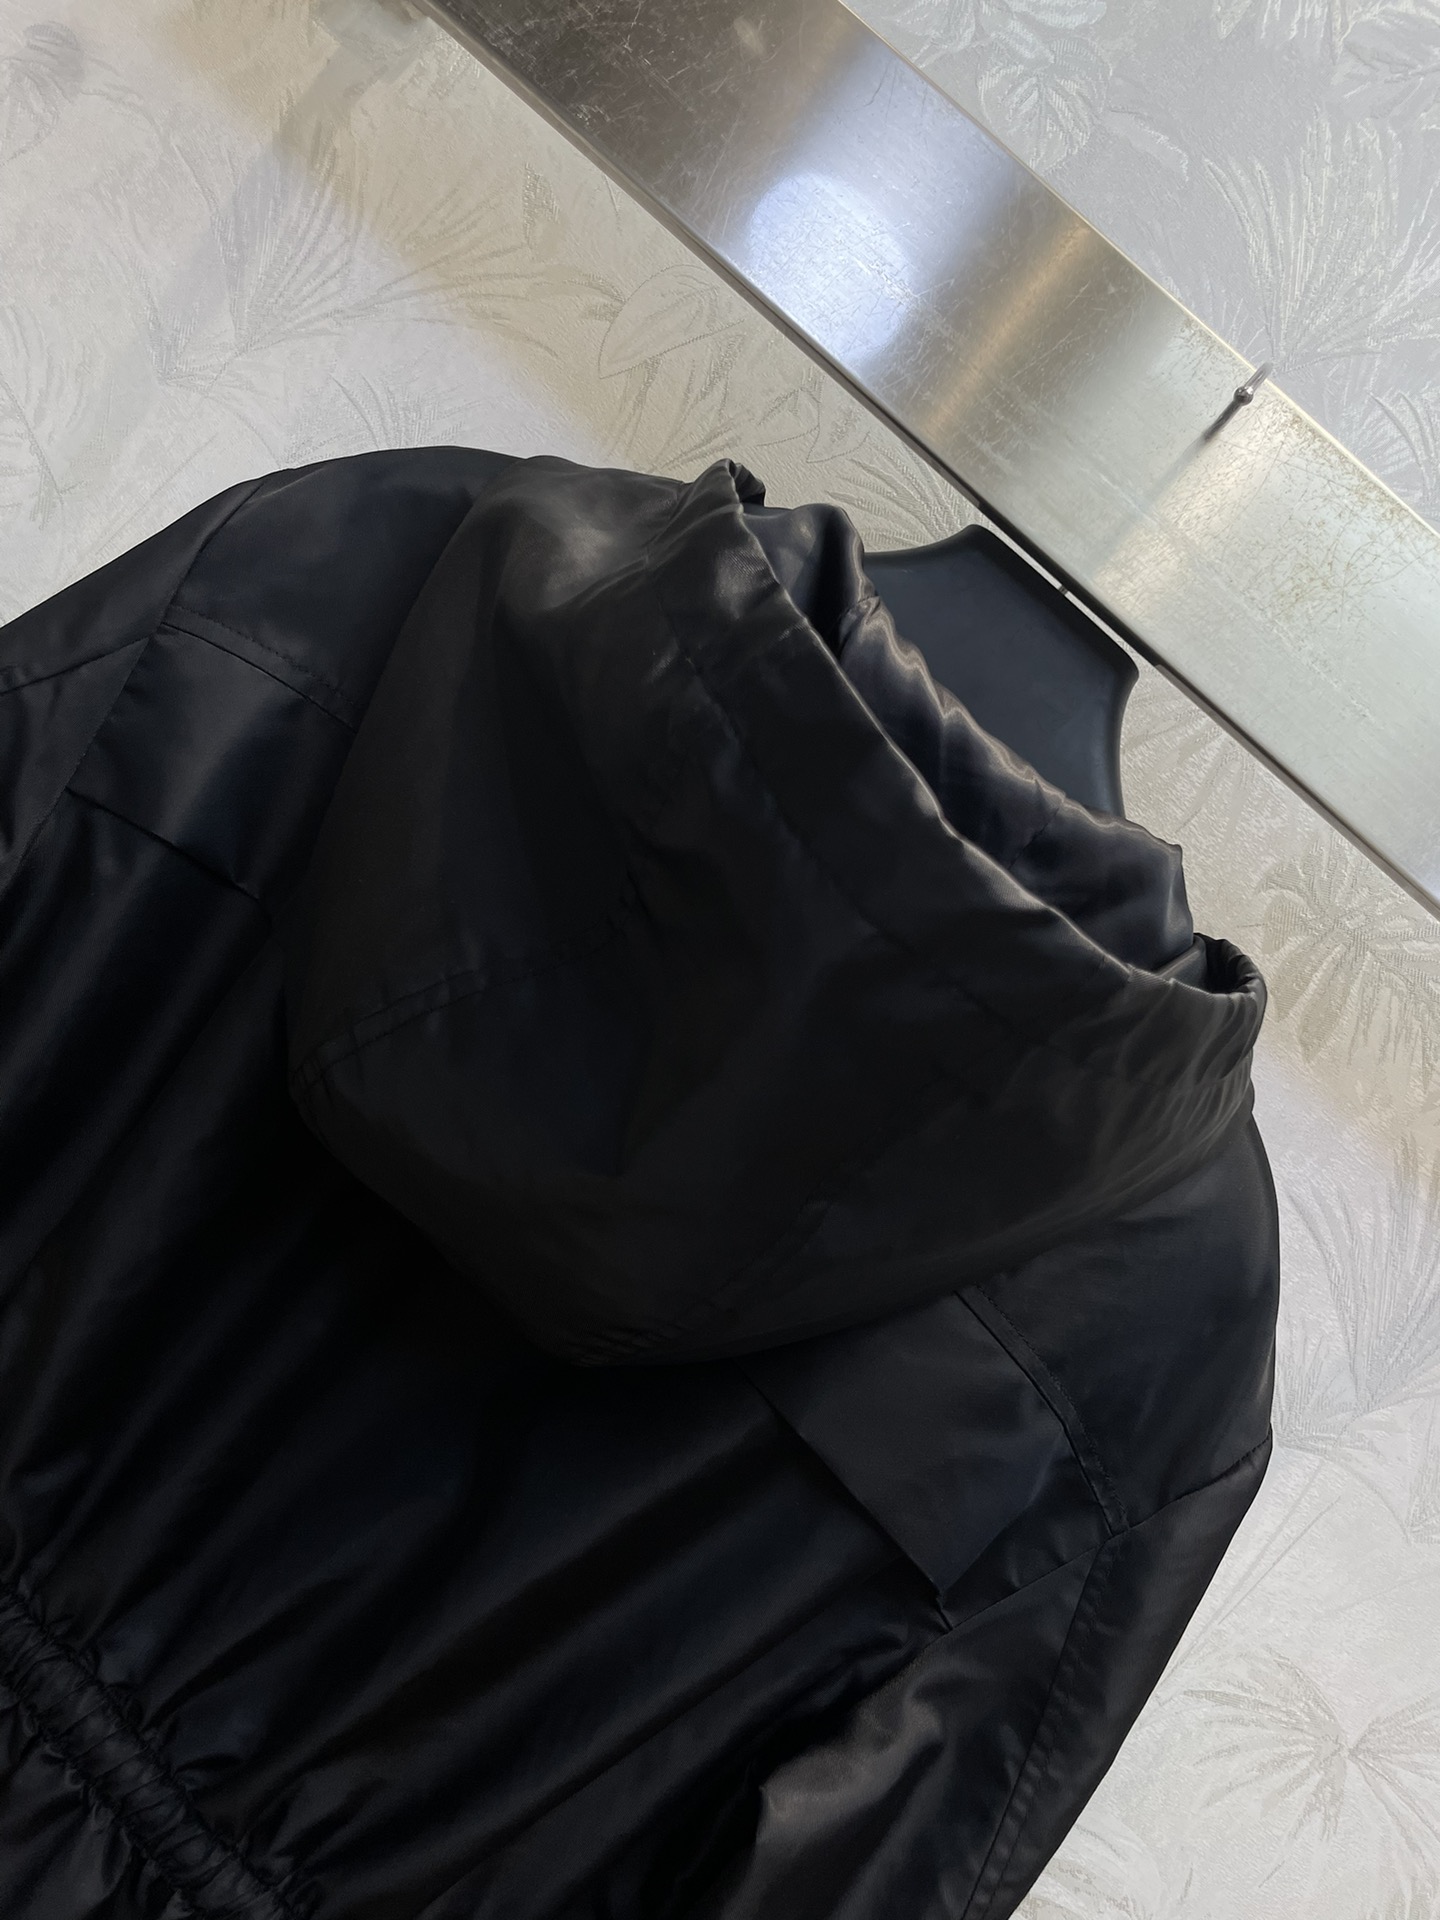 PD24新款双口袋尼龙收腰冲锋衣夹克很有设计感的一件面料很挺括上身有型不会软塌腰部抽绳收腰设计可以很好的